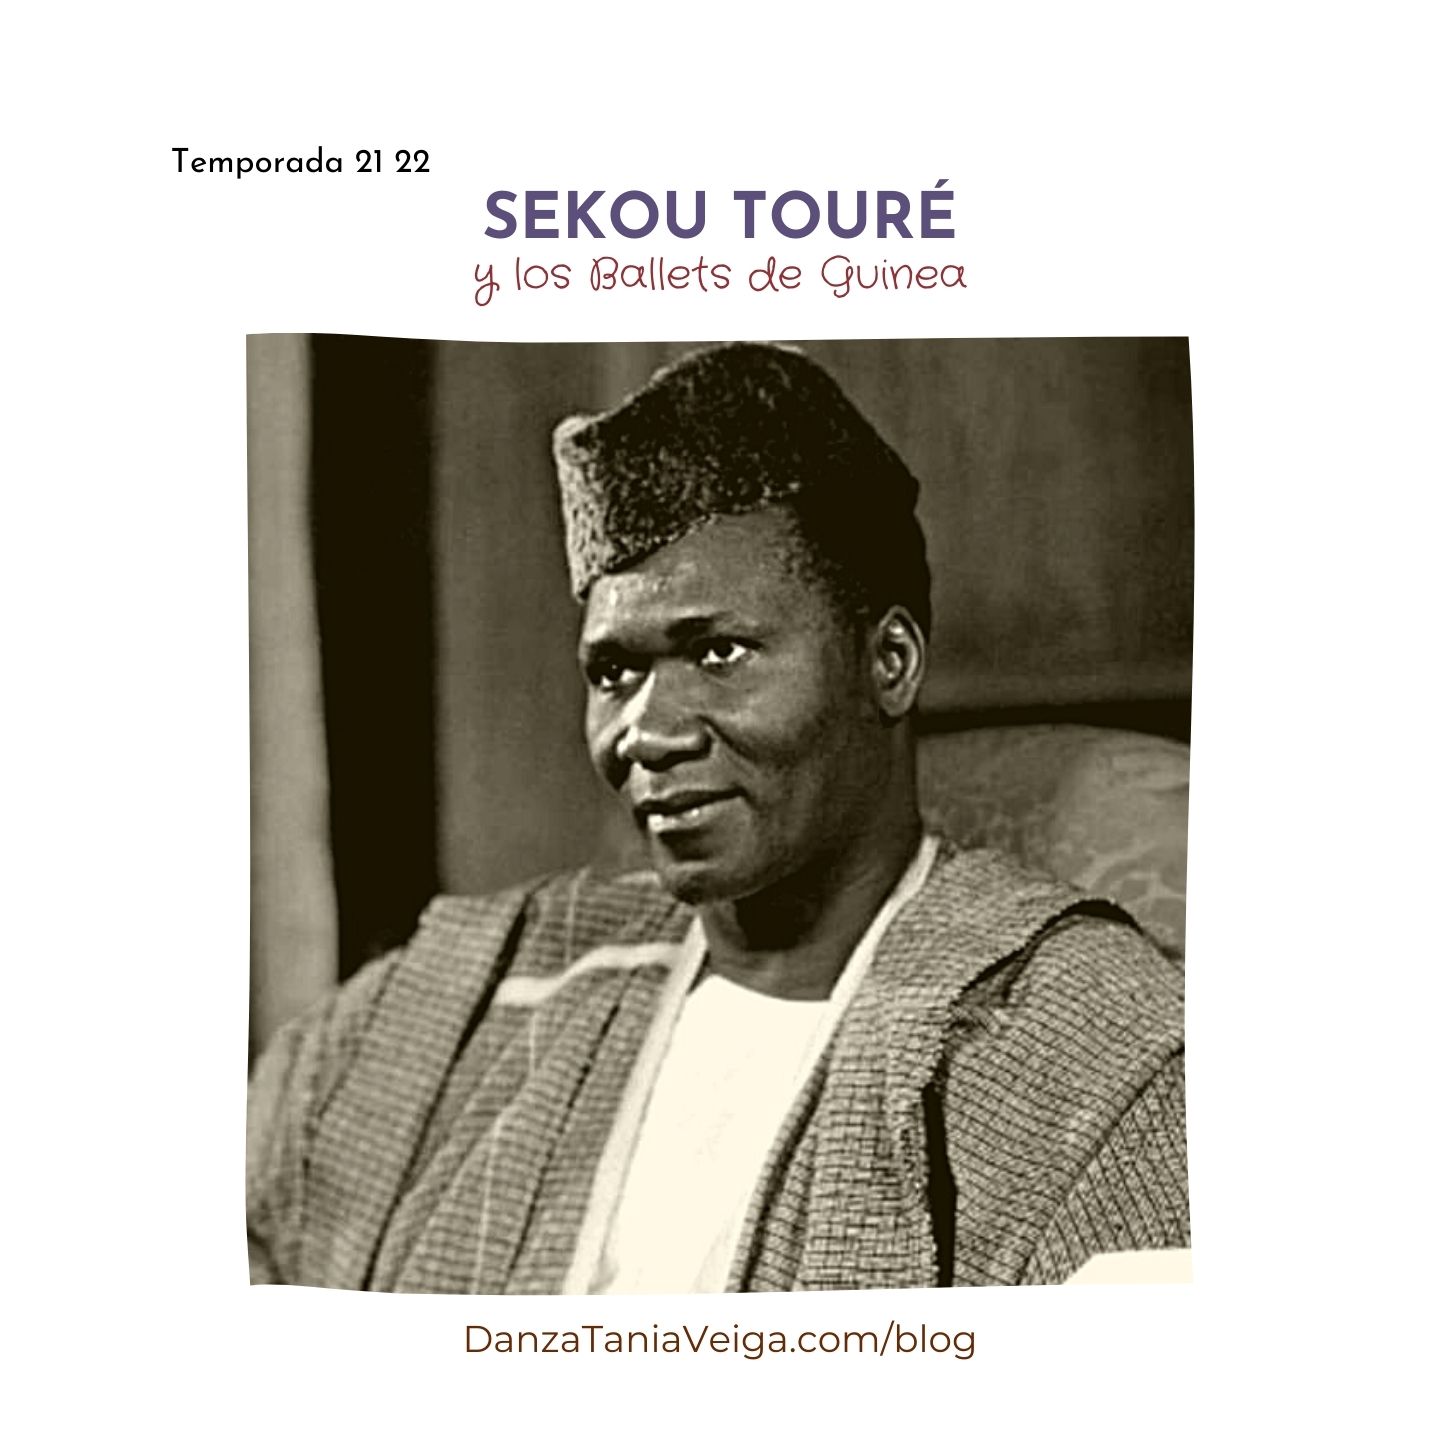 Sekou Touré y los ballets de guinea